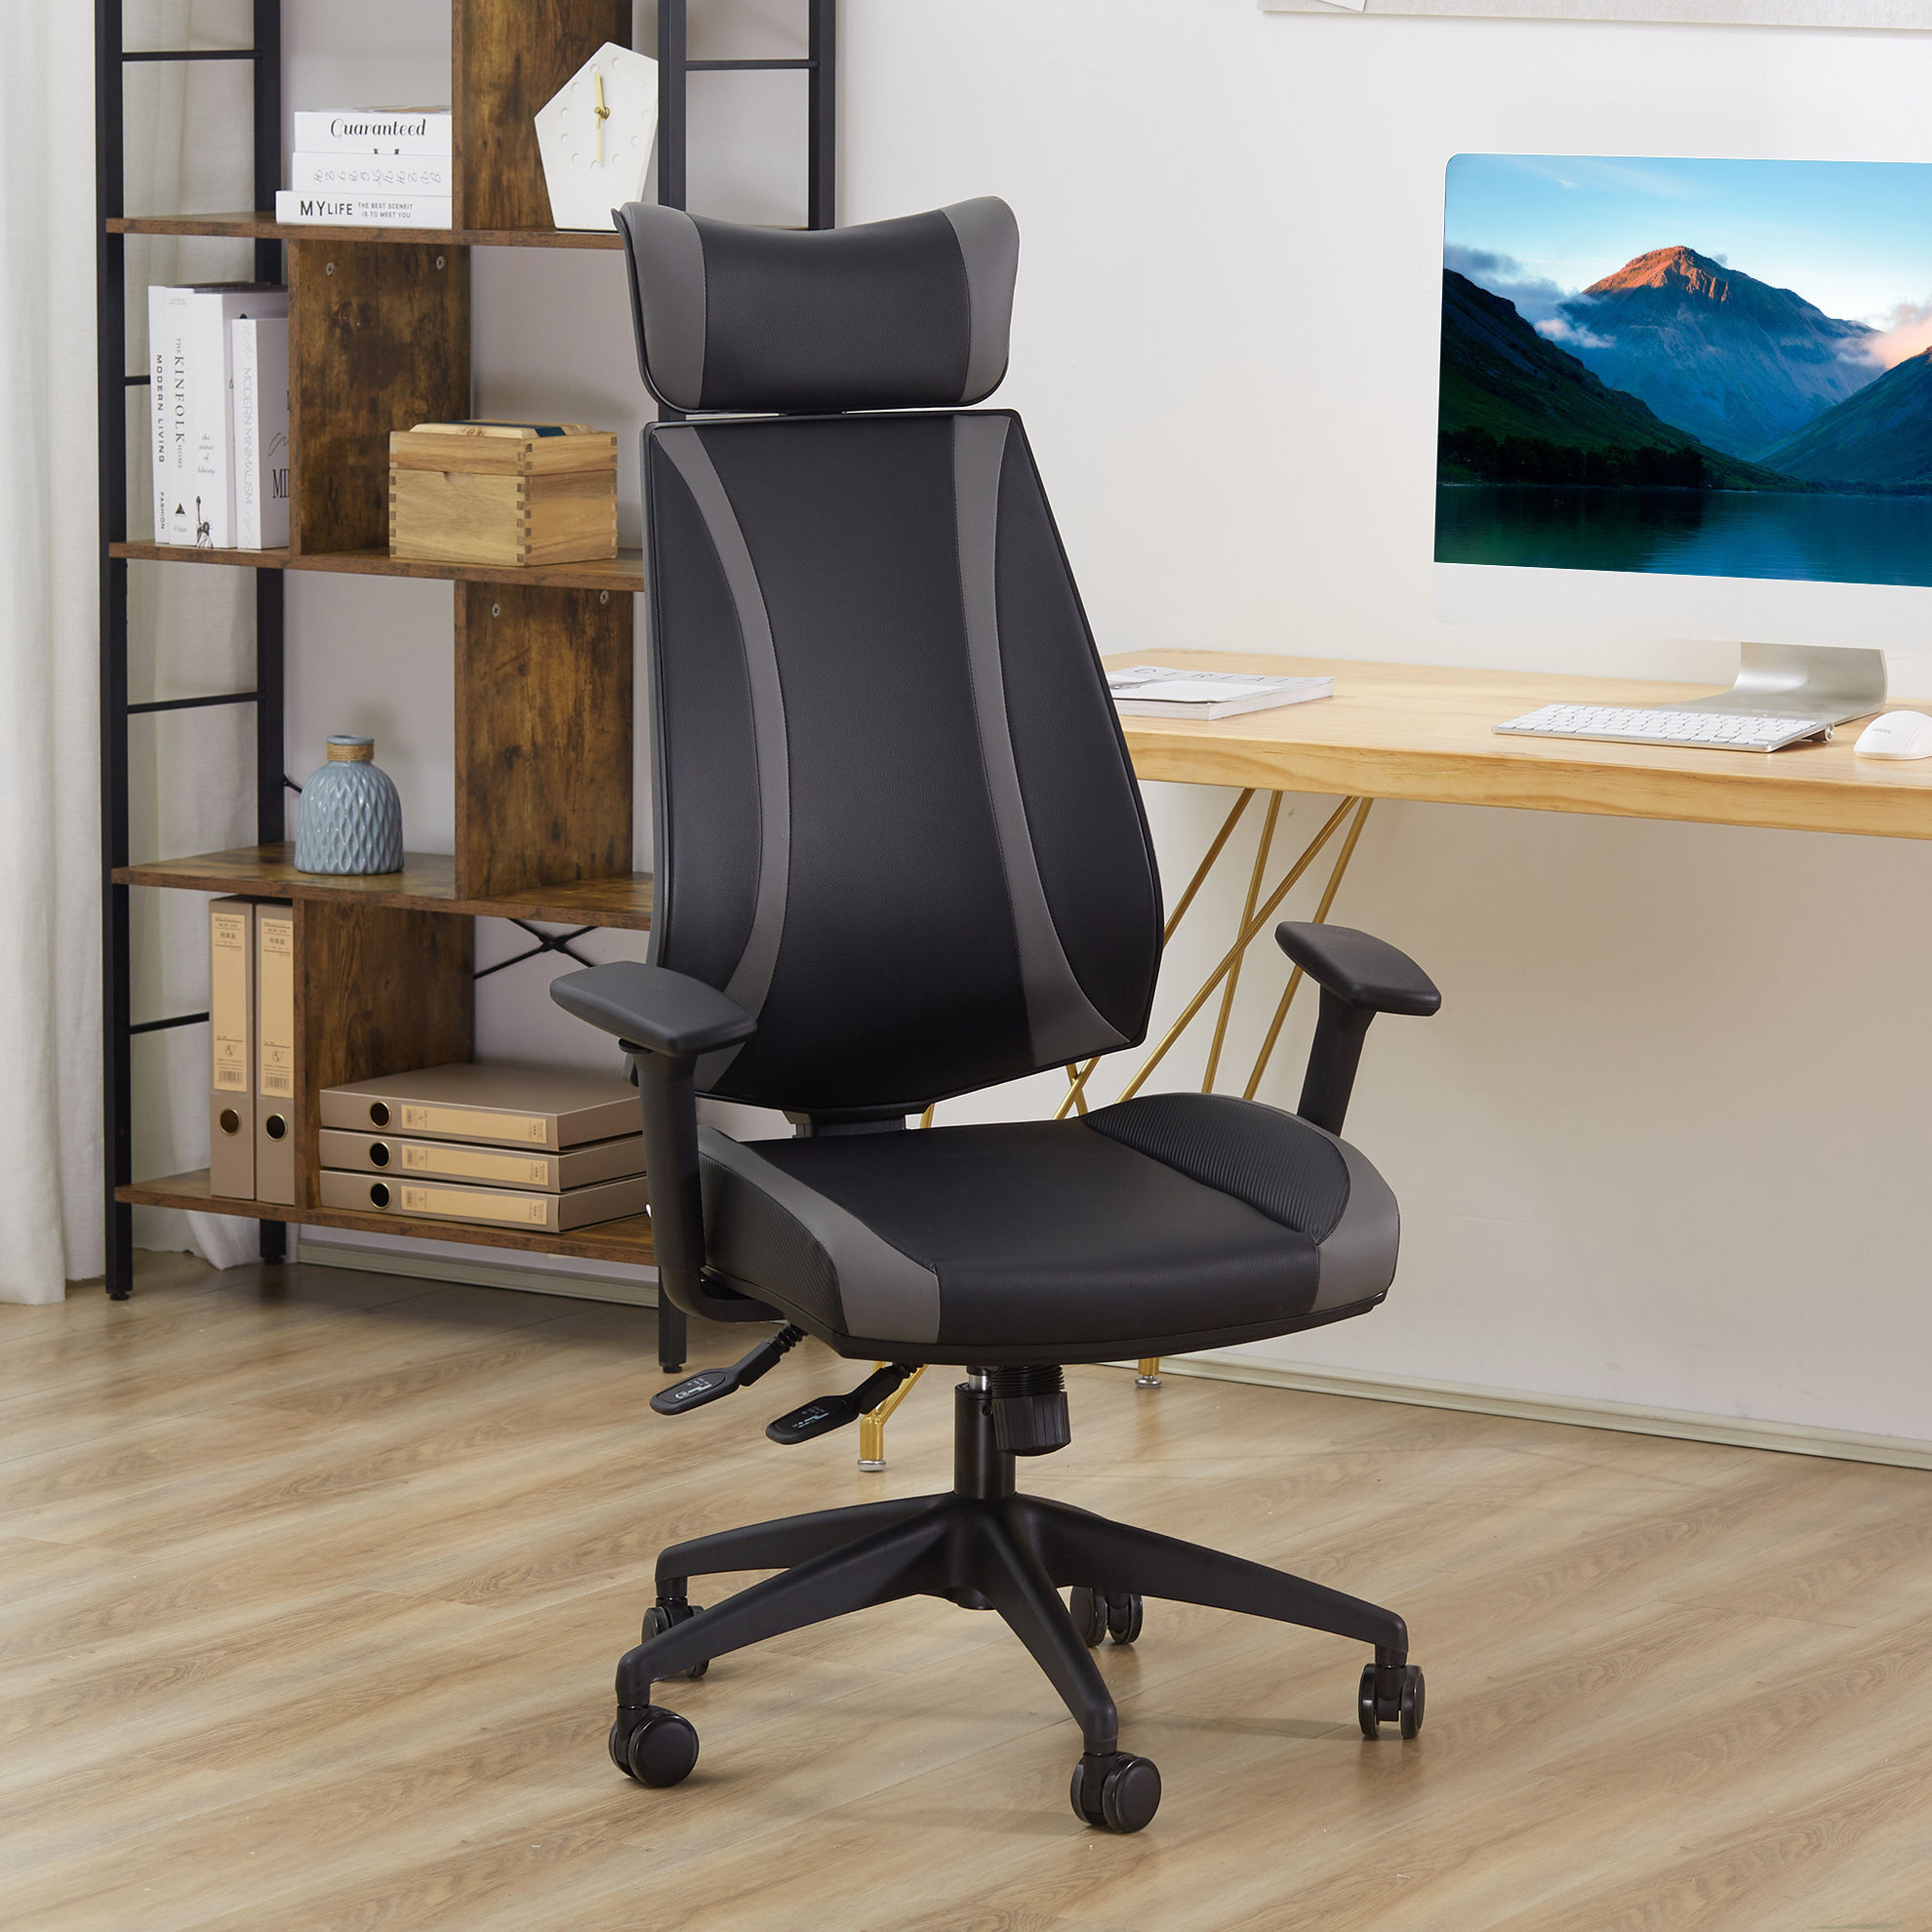 Bürostuhl dicke Polsterung, ergonomisch geformt, gemütliche polsterung  online kaufen - Orbisana